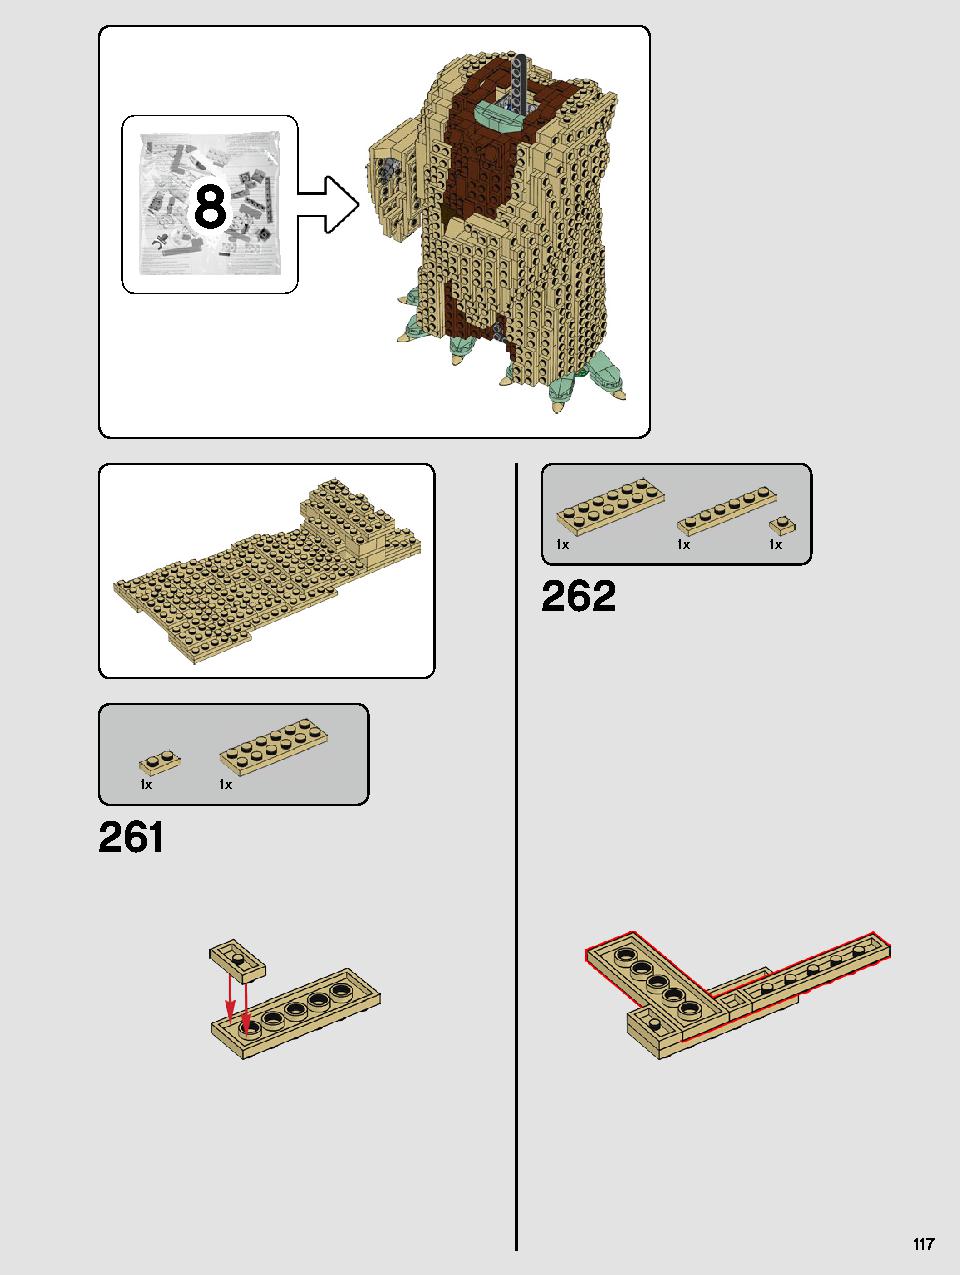 ヨーダ™ 75255 レゴの商品情報 レゴの説明書・組立方法 117 page